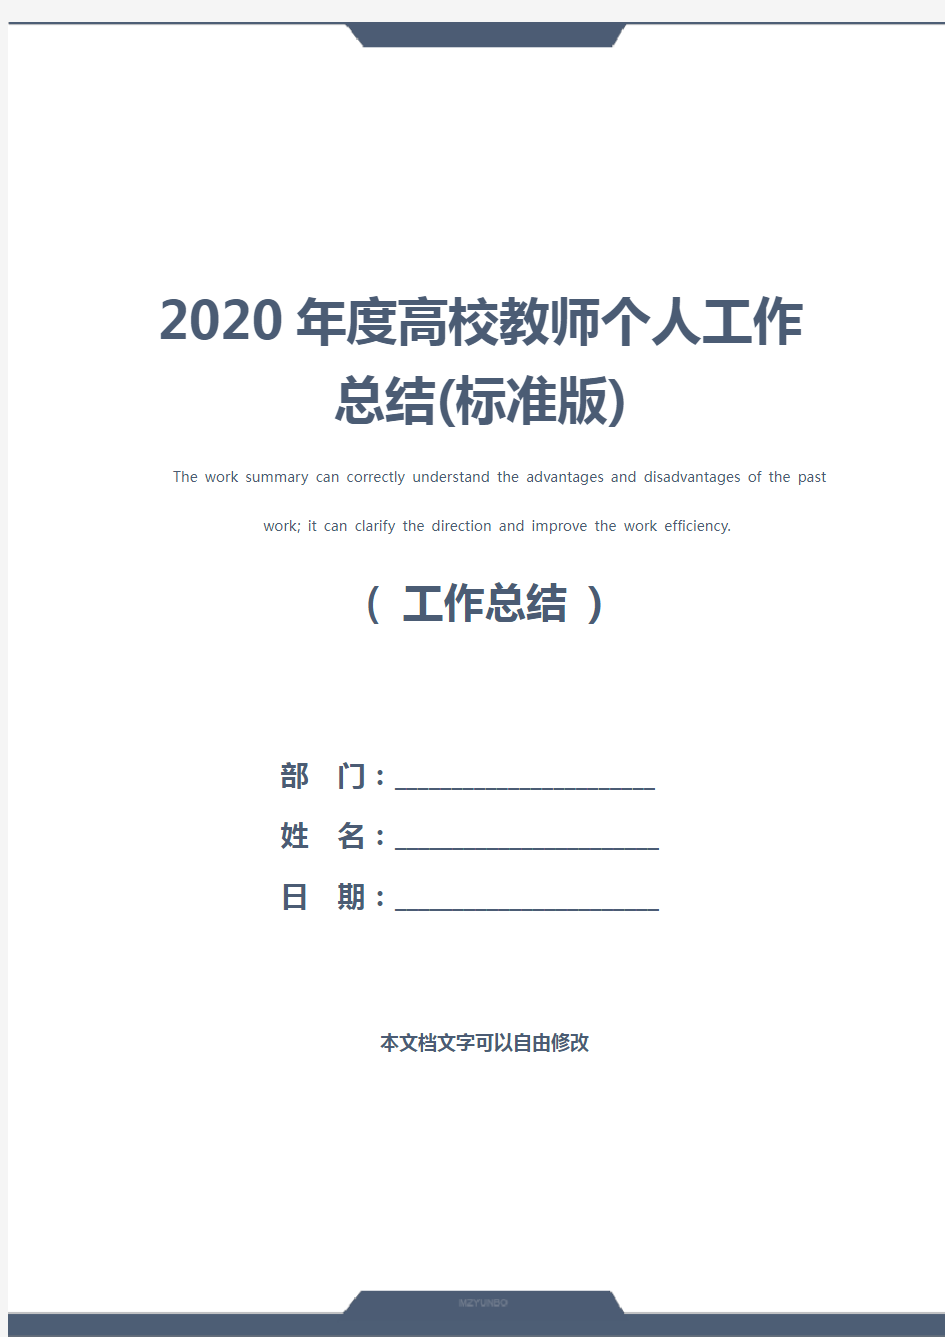 2020年度高校教师个人工作总结(标准版)